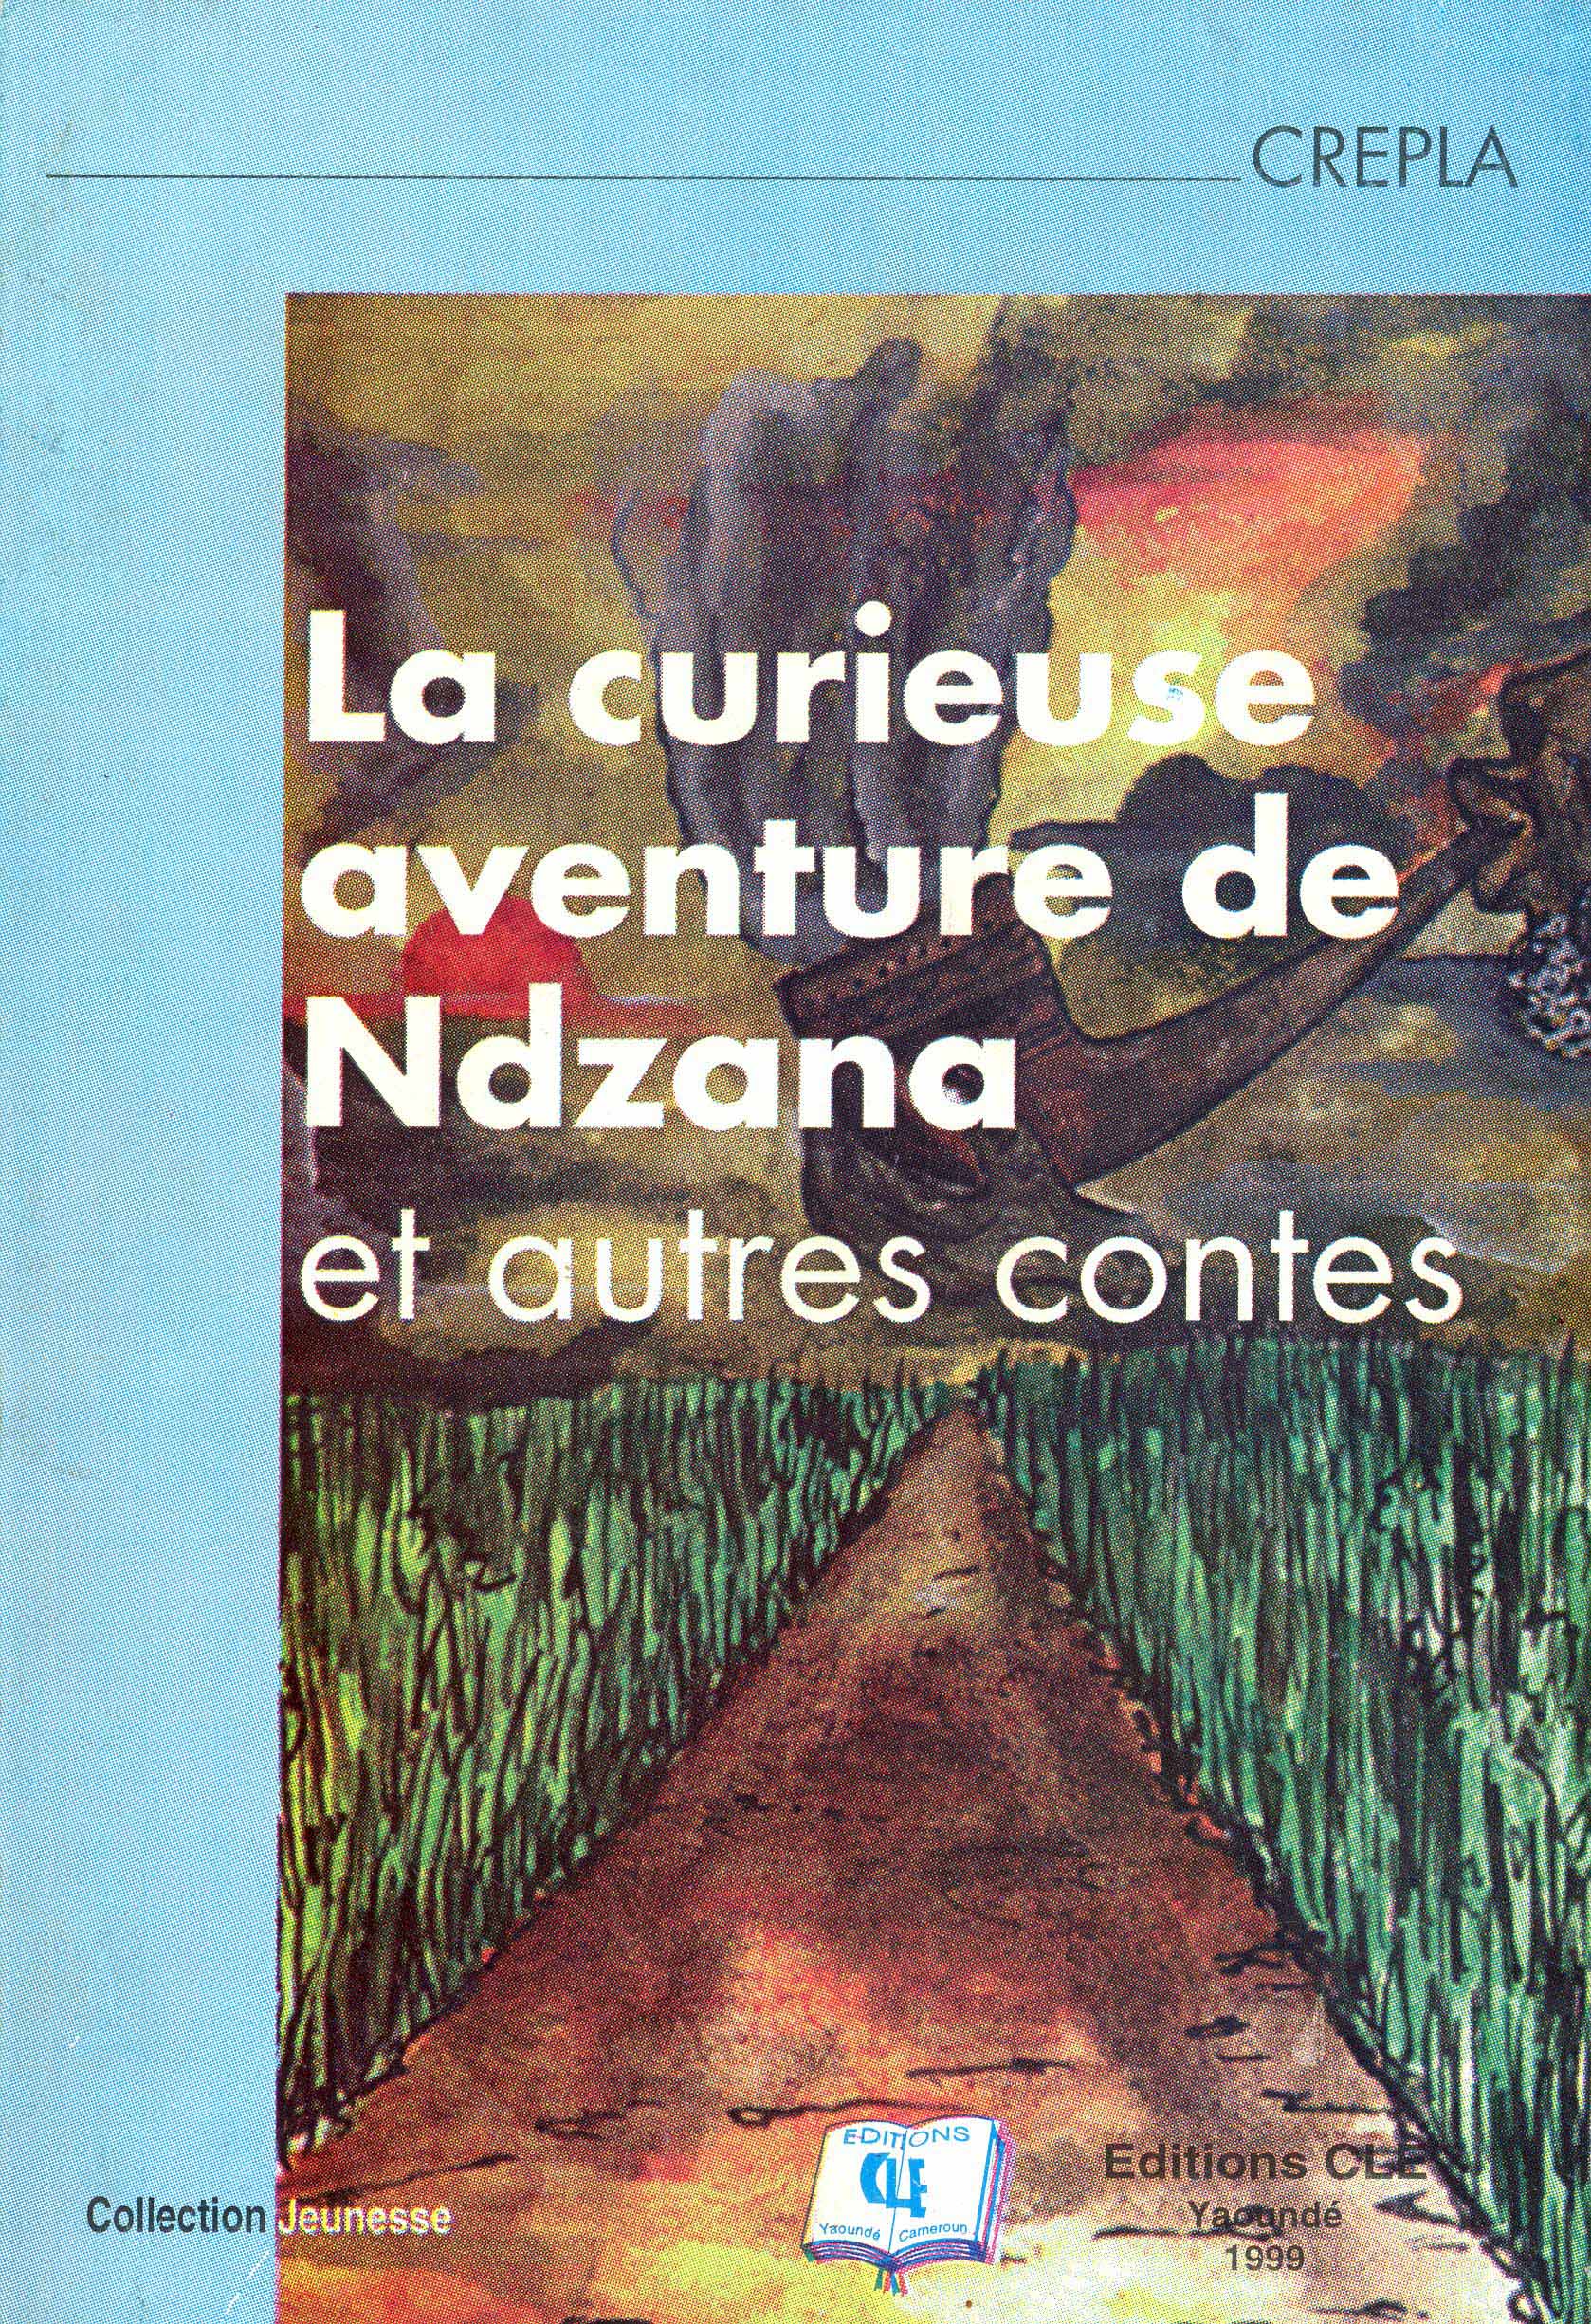 La curieuse aventure de Ndzana et autres contes